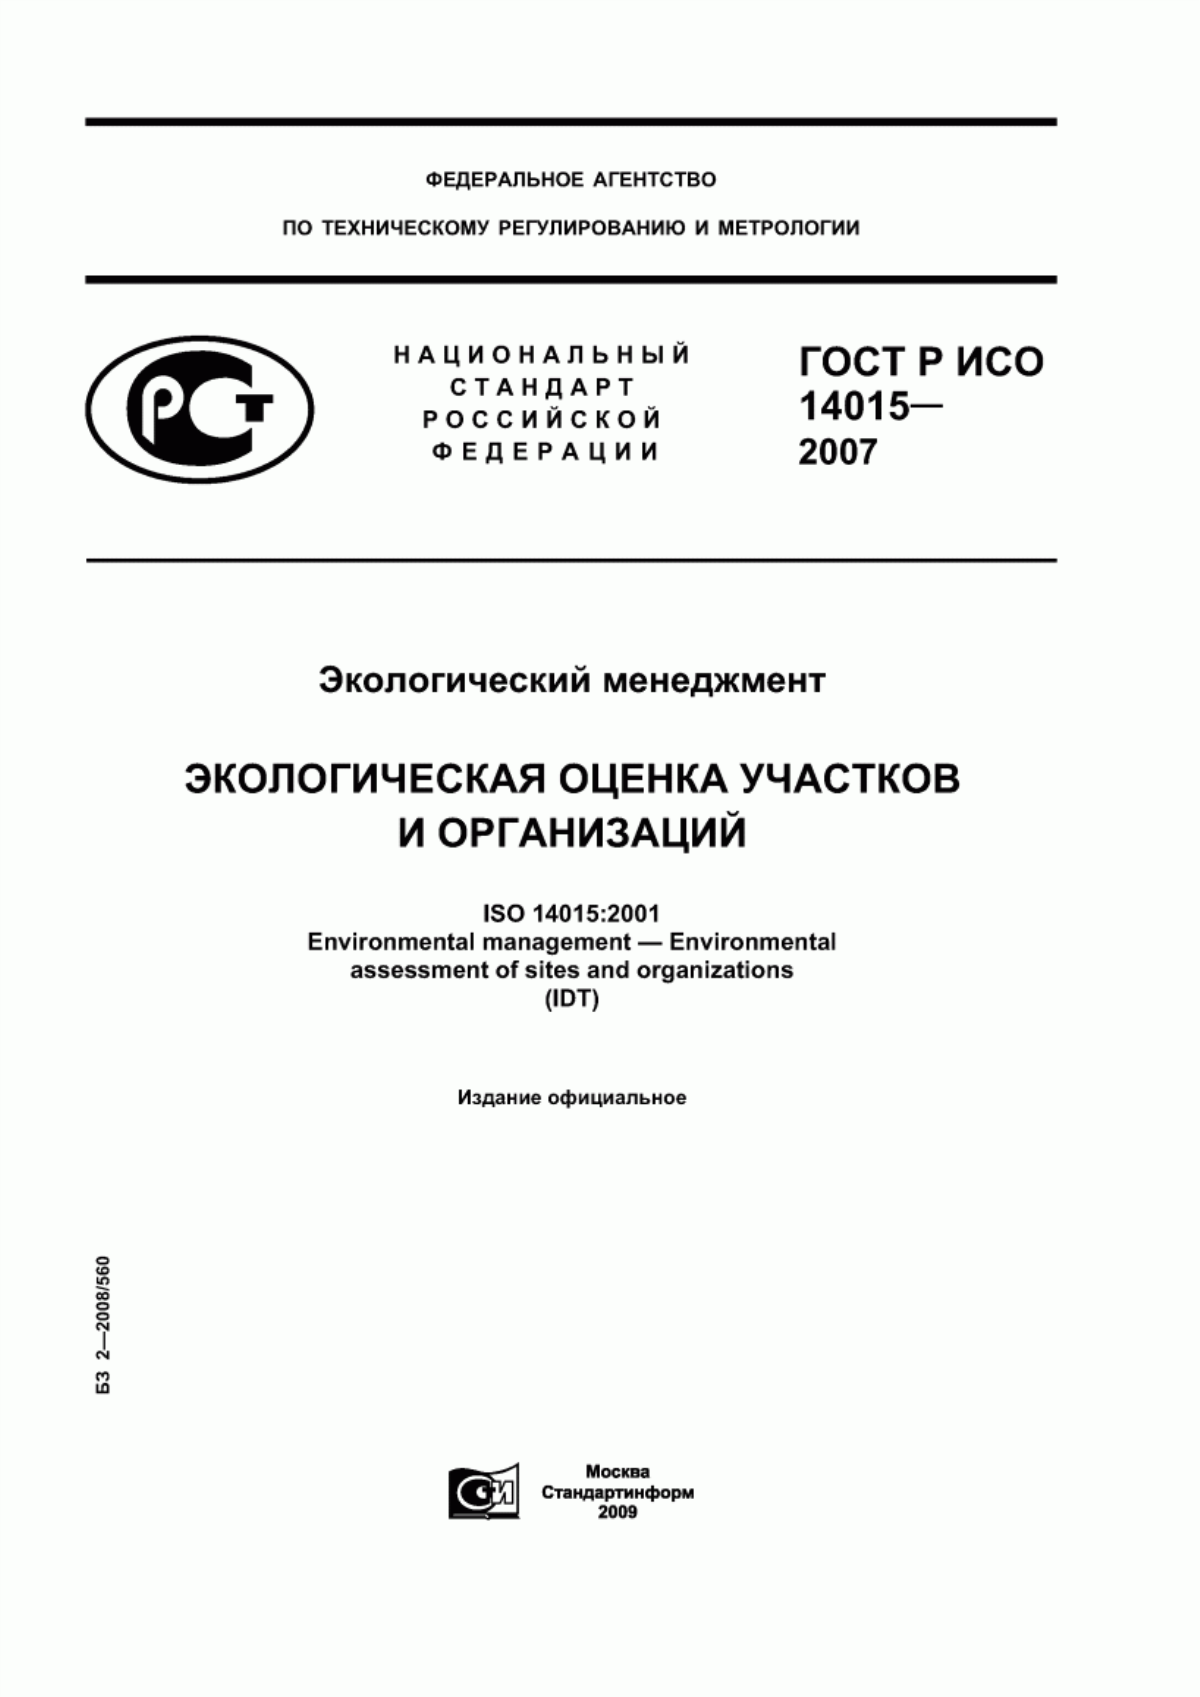 ГОСТ Р ИСО 14015-2007 Экологический менеджмент. Экологическая оценка участков и организаций